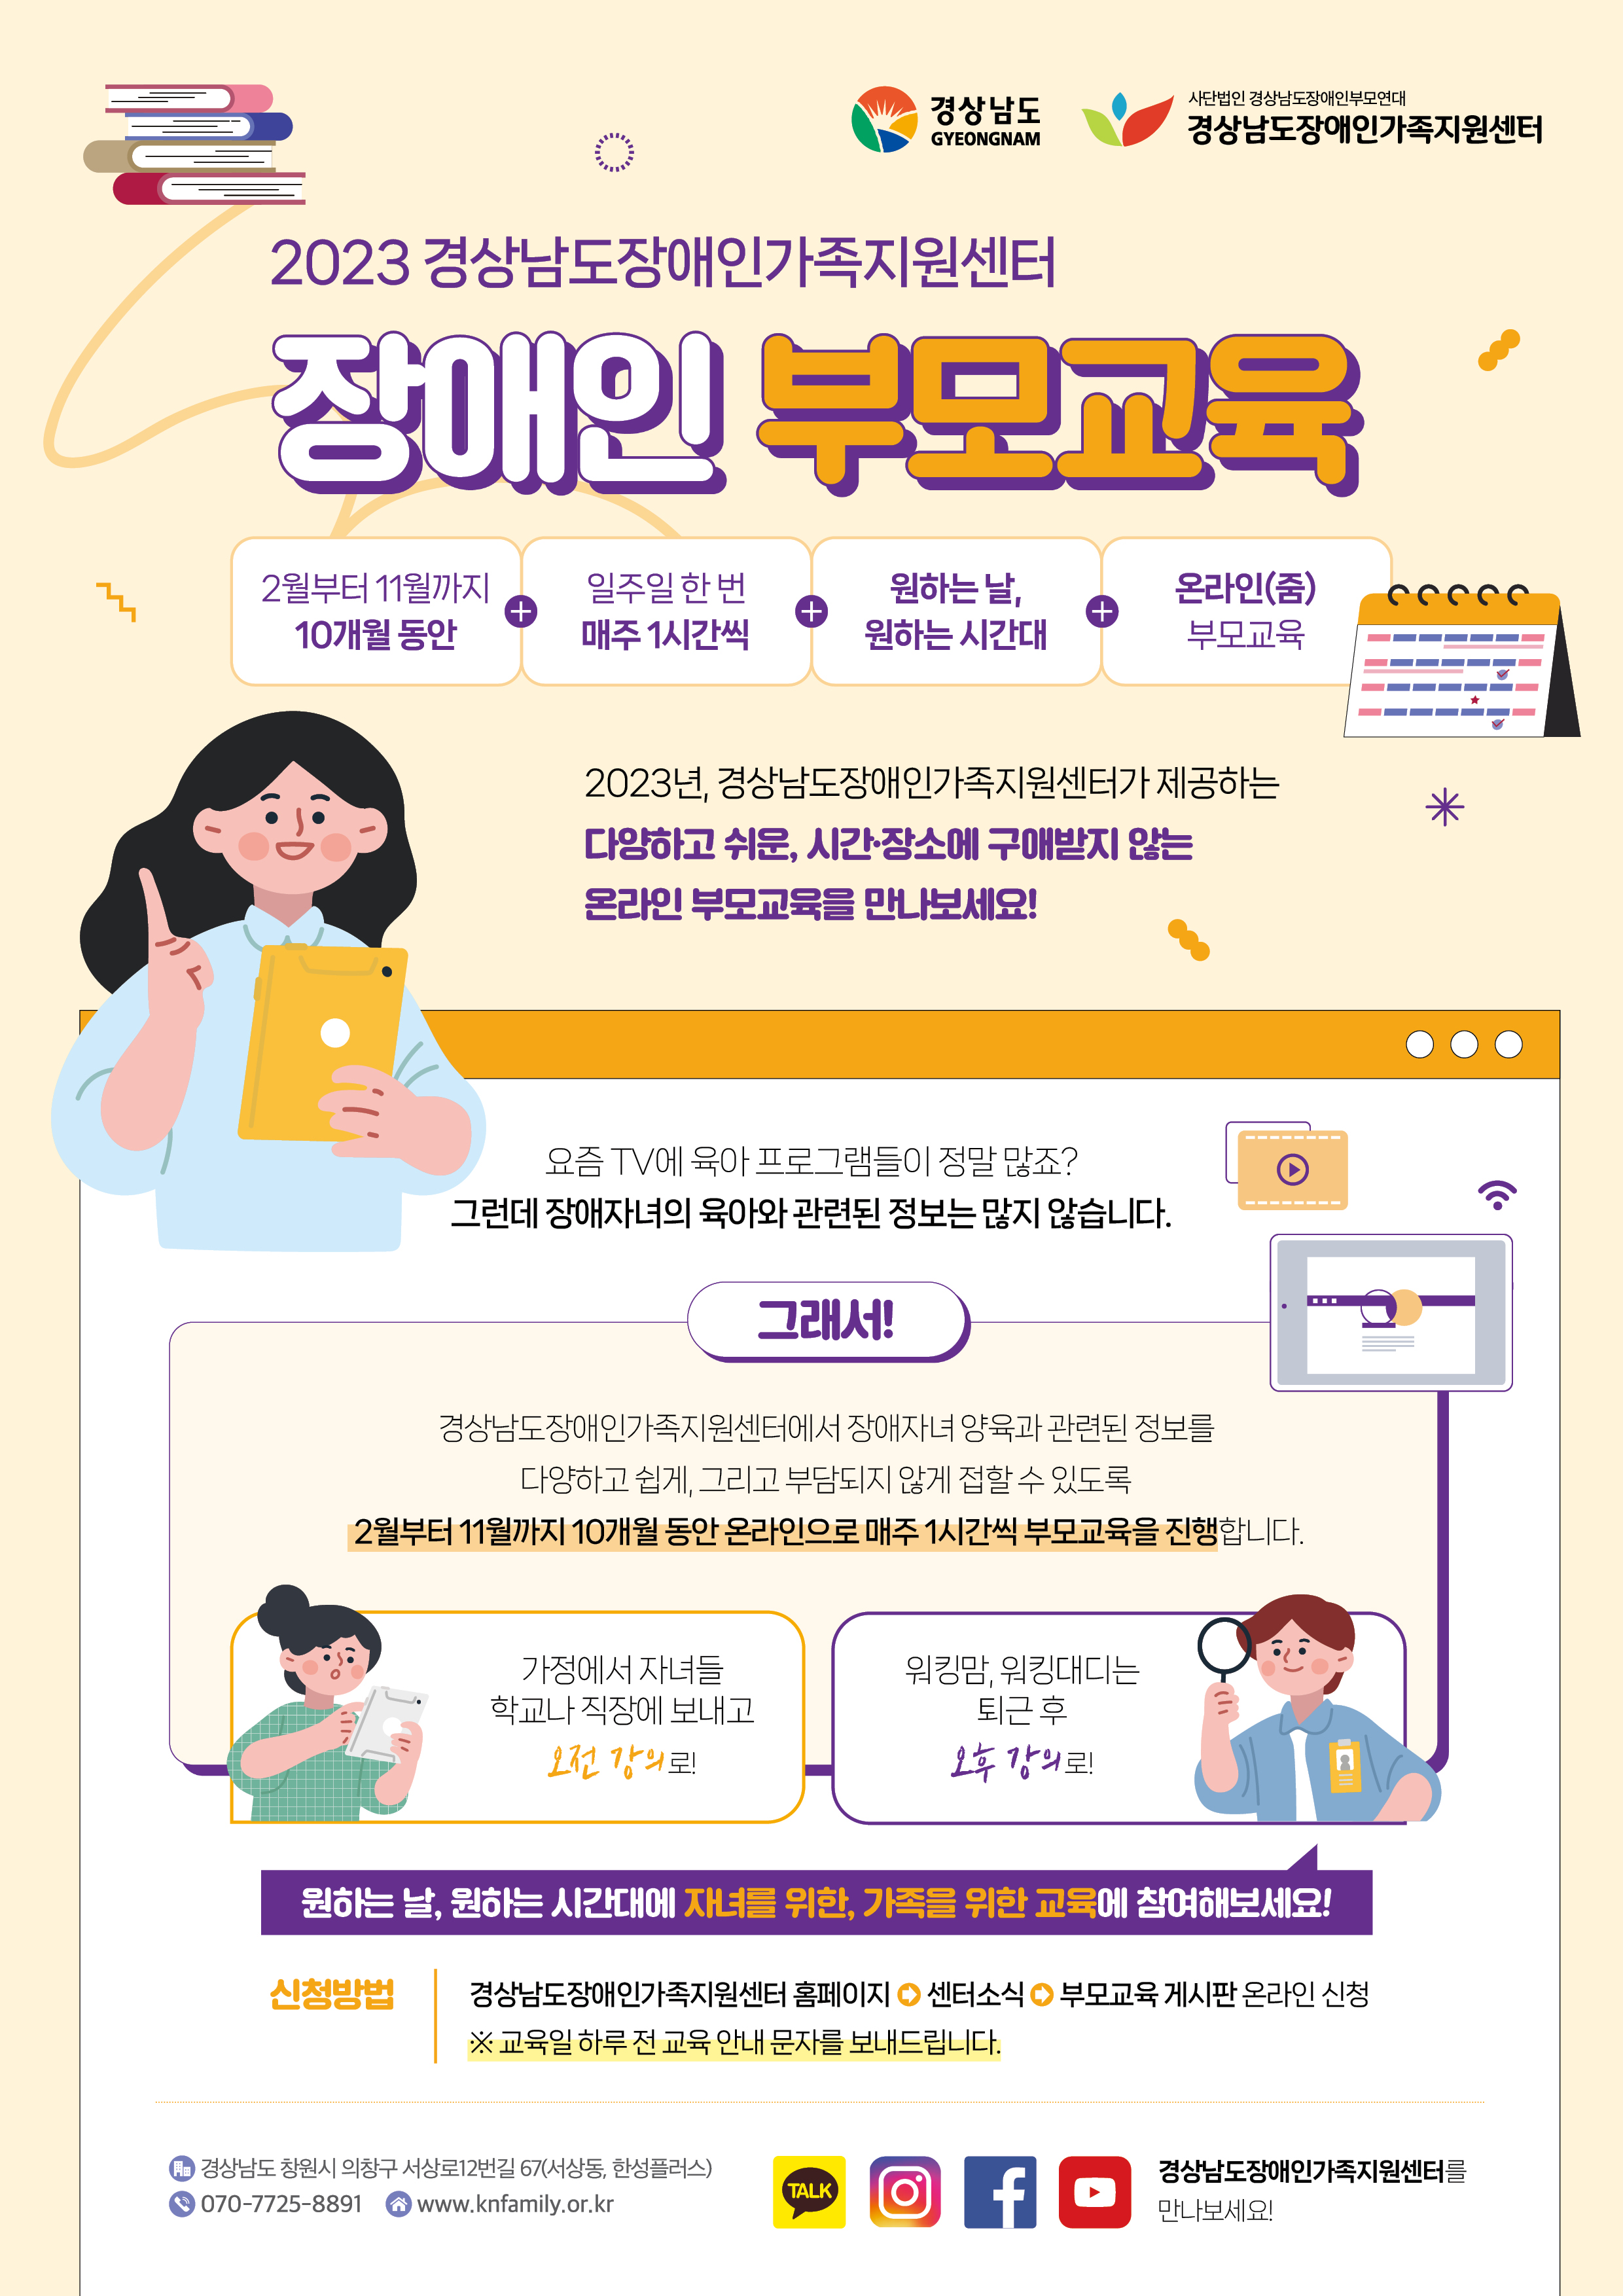 2023년 경상남도장애인가족지원센터 온라인 부모교육 모집 안내(홍보) 1 번째 이미지